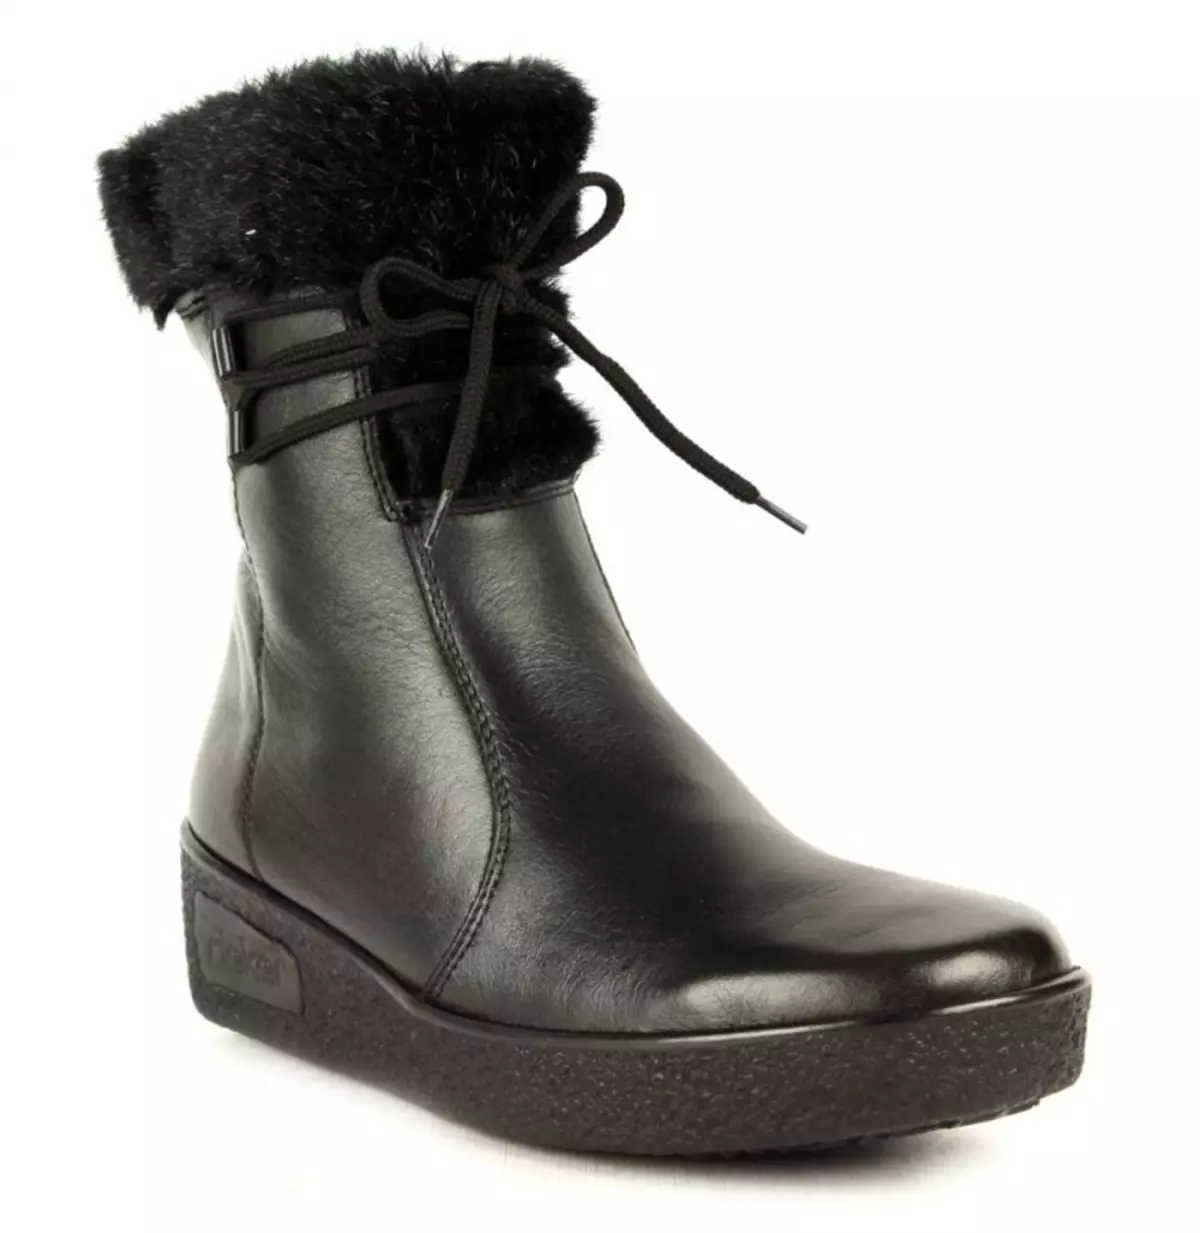 Rieker Boots (49 صورة / صور): نماذج أحذية الجلد المدبوغ أبيض المرأة ويدج، وكذلك أحذية الأطفال شركات ريكر، الاستعراضات 2092_34